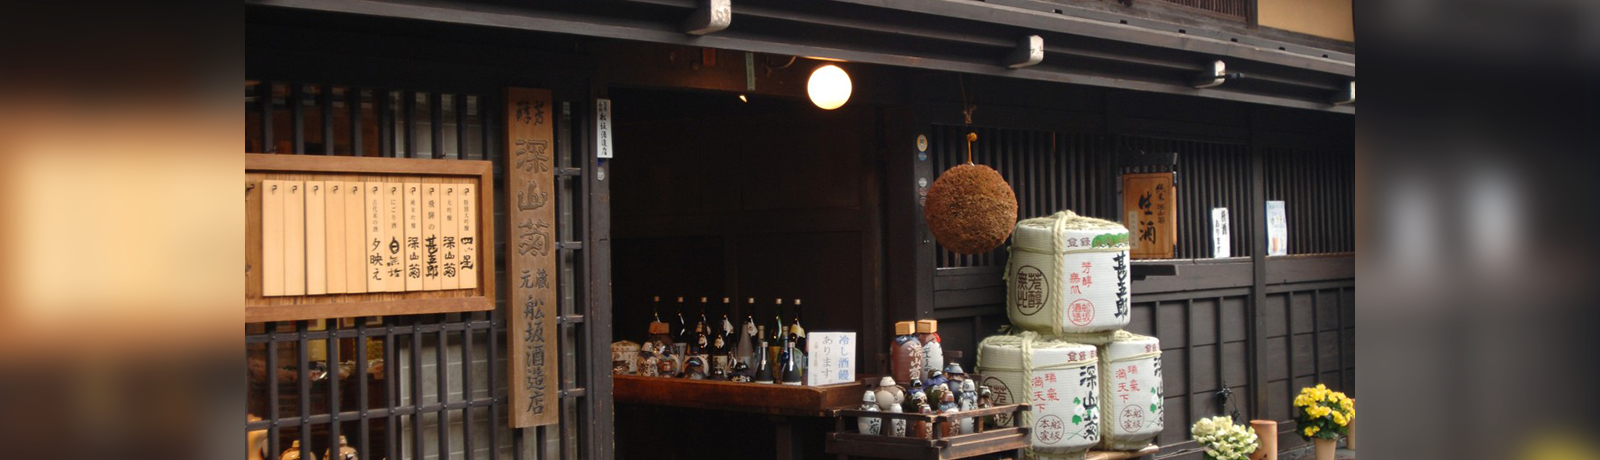 Funasaka Sake Brewery Co., Ltd.